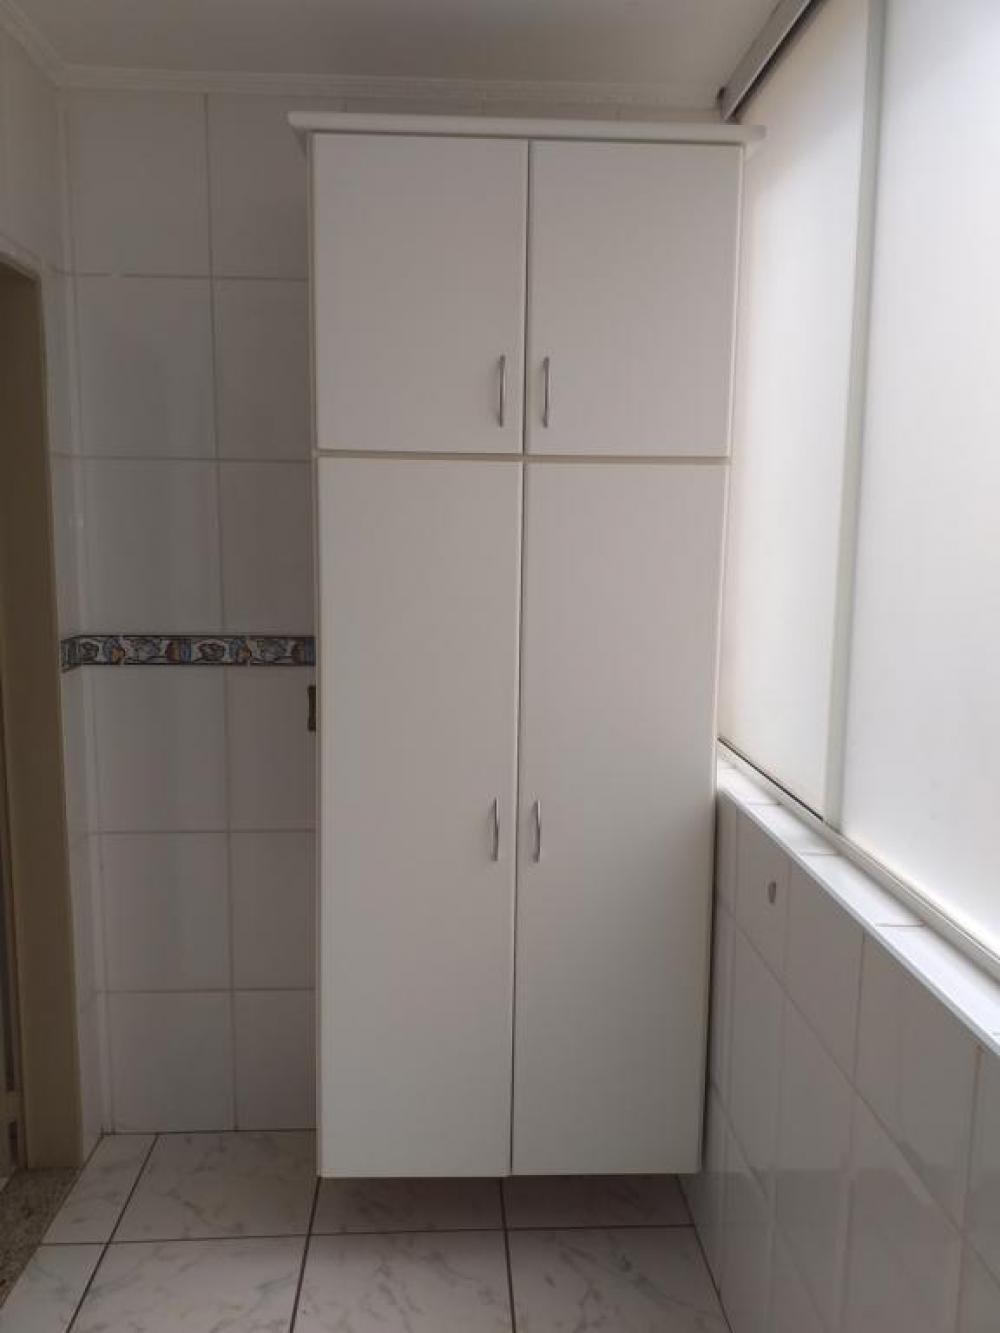 Alugar Apartamento / Padrão em São José do Rio Preto apenas R$ 1.400,00 - Foto 2